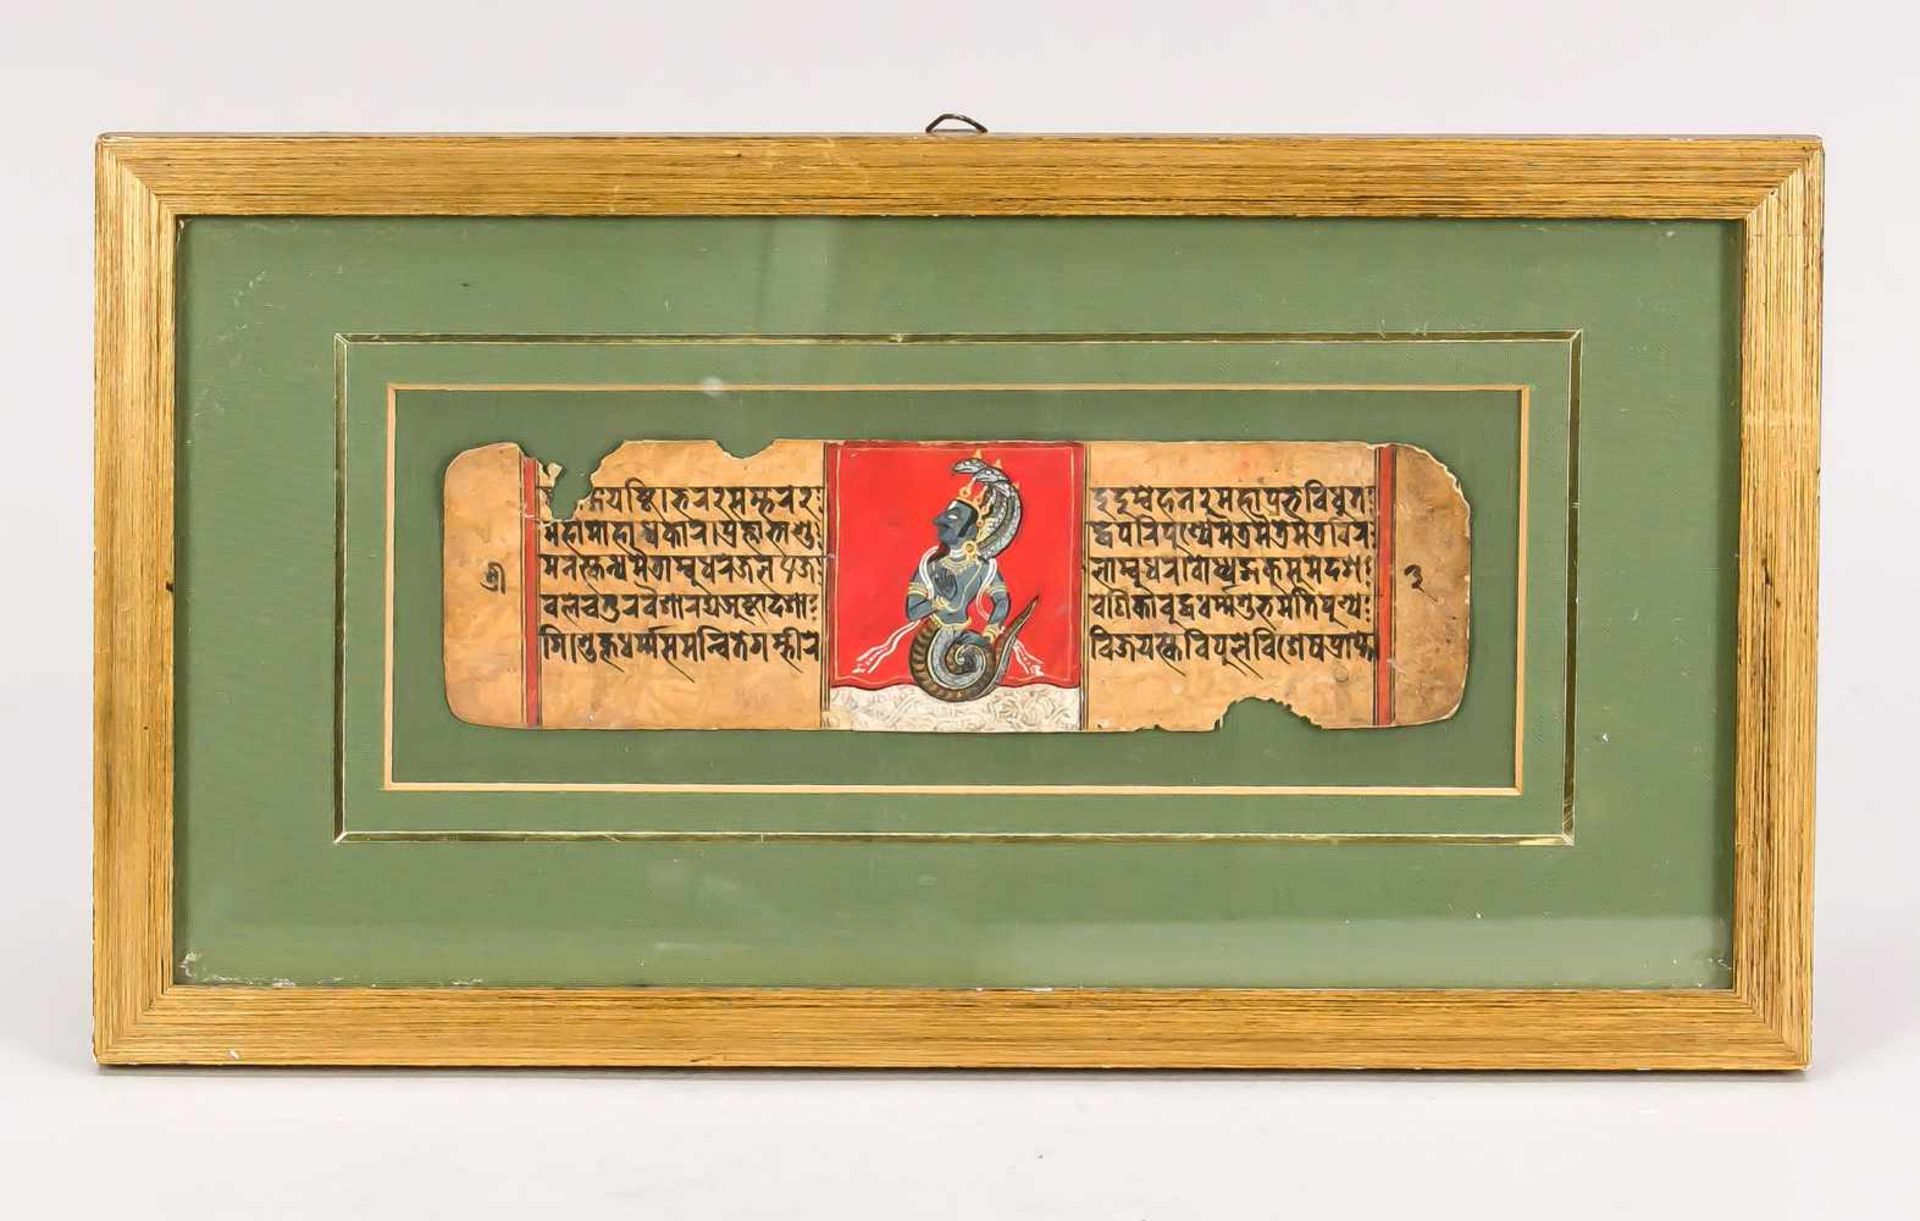 Blatt aus einer heiligen Schrift, Indien, 18./19. Jh. In der Mitte eine kleine